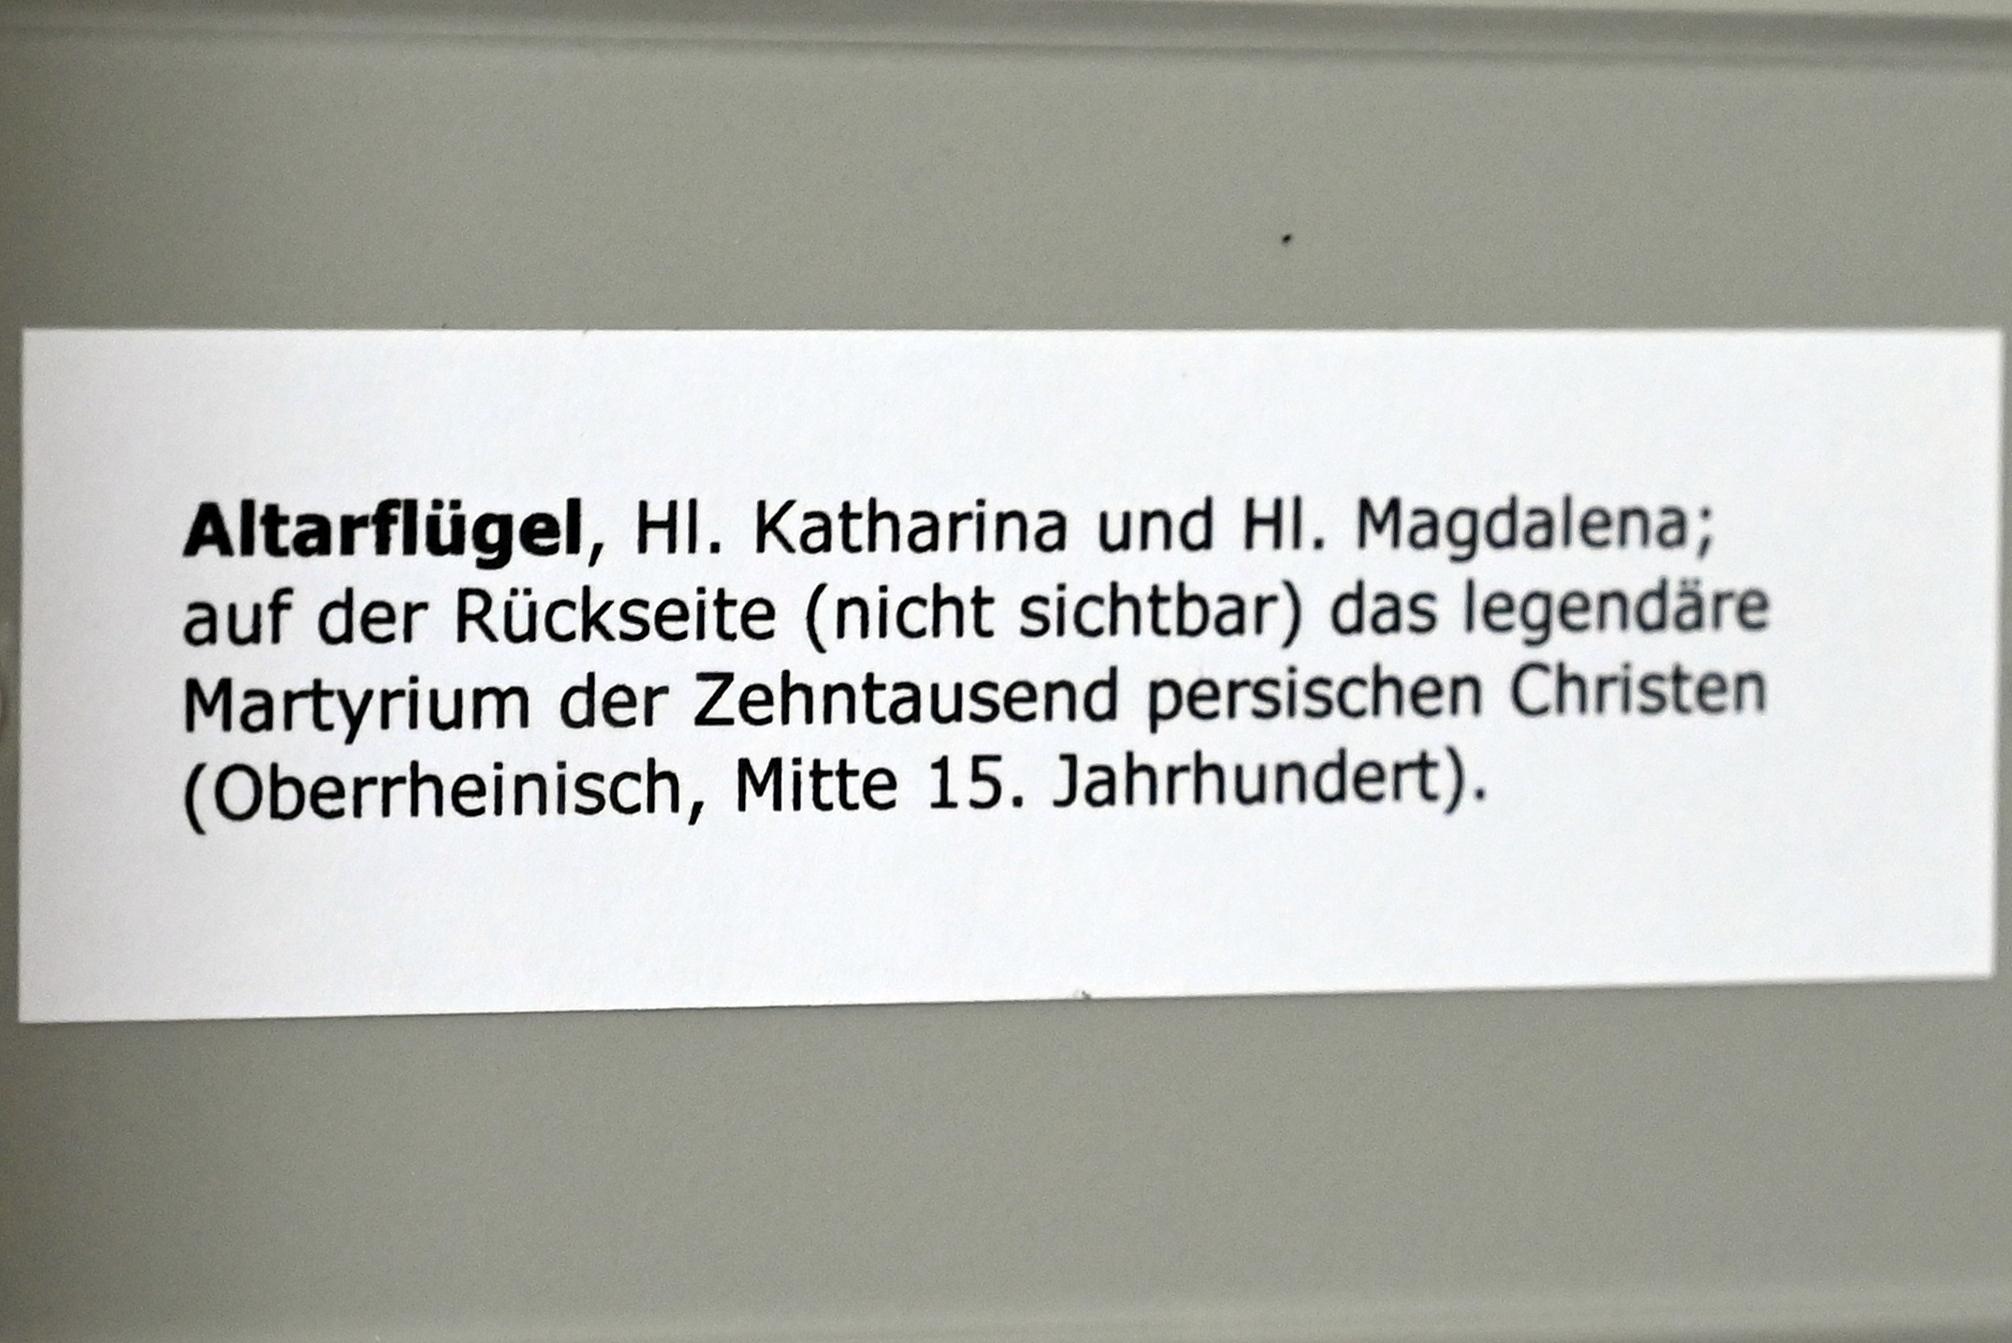 Altarflügel mit den hll. Katharina und Magdalena, Überlingen, Städtisches Museum, Gotisches Zimmer, Mitte 15. Jhd., Bild 2/2